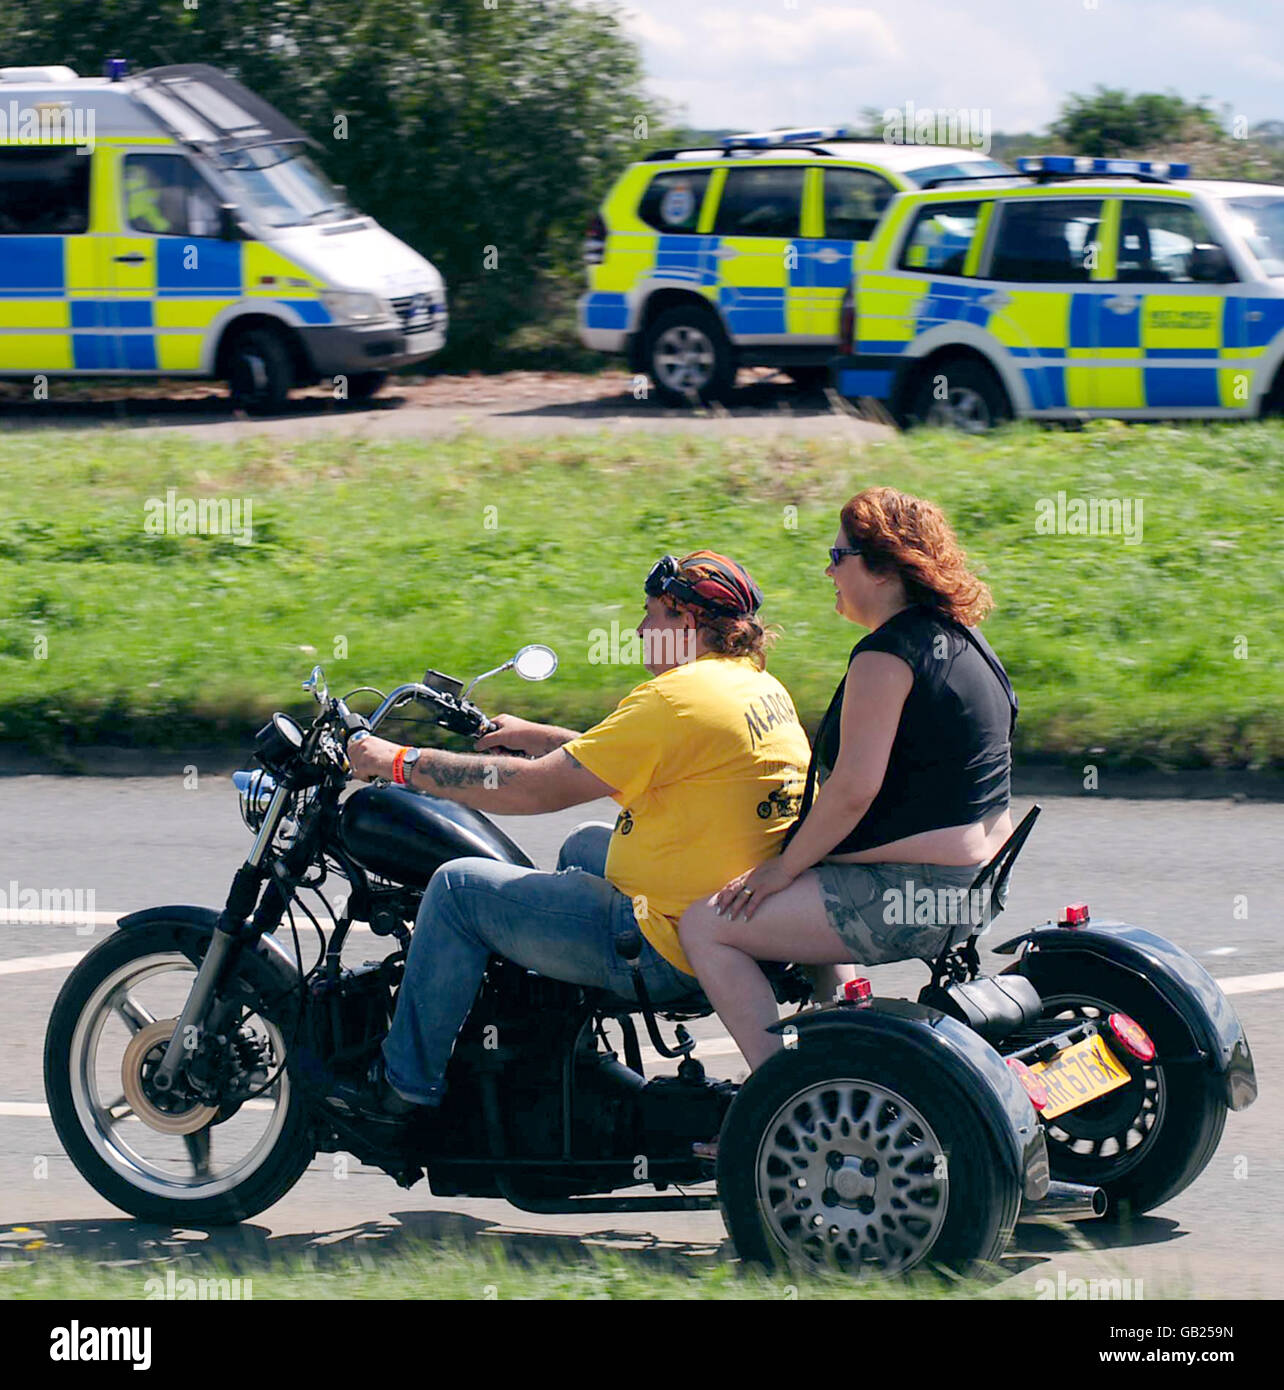 Les motards arrivent pour le festival des motards Bulldog Bash au circuit de course d'Avon Park, long Marston, Warwickshire. Il y a une forte présence de la police à l'événement après la mort de l'Ange de l'Enfer Gerry Tobin l'année dernière. Banque D'Images